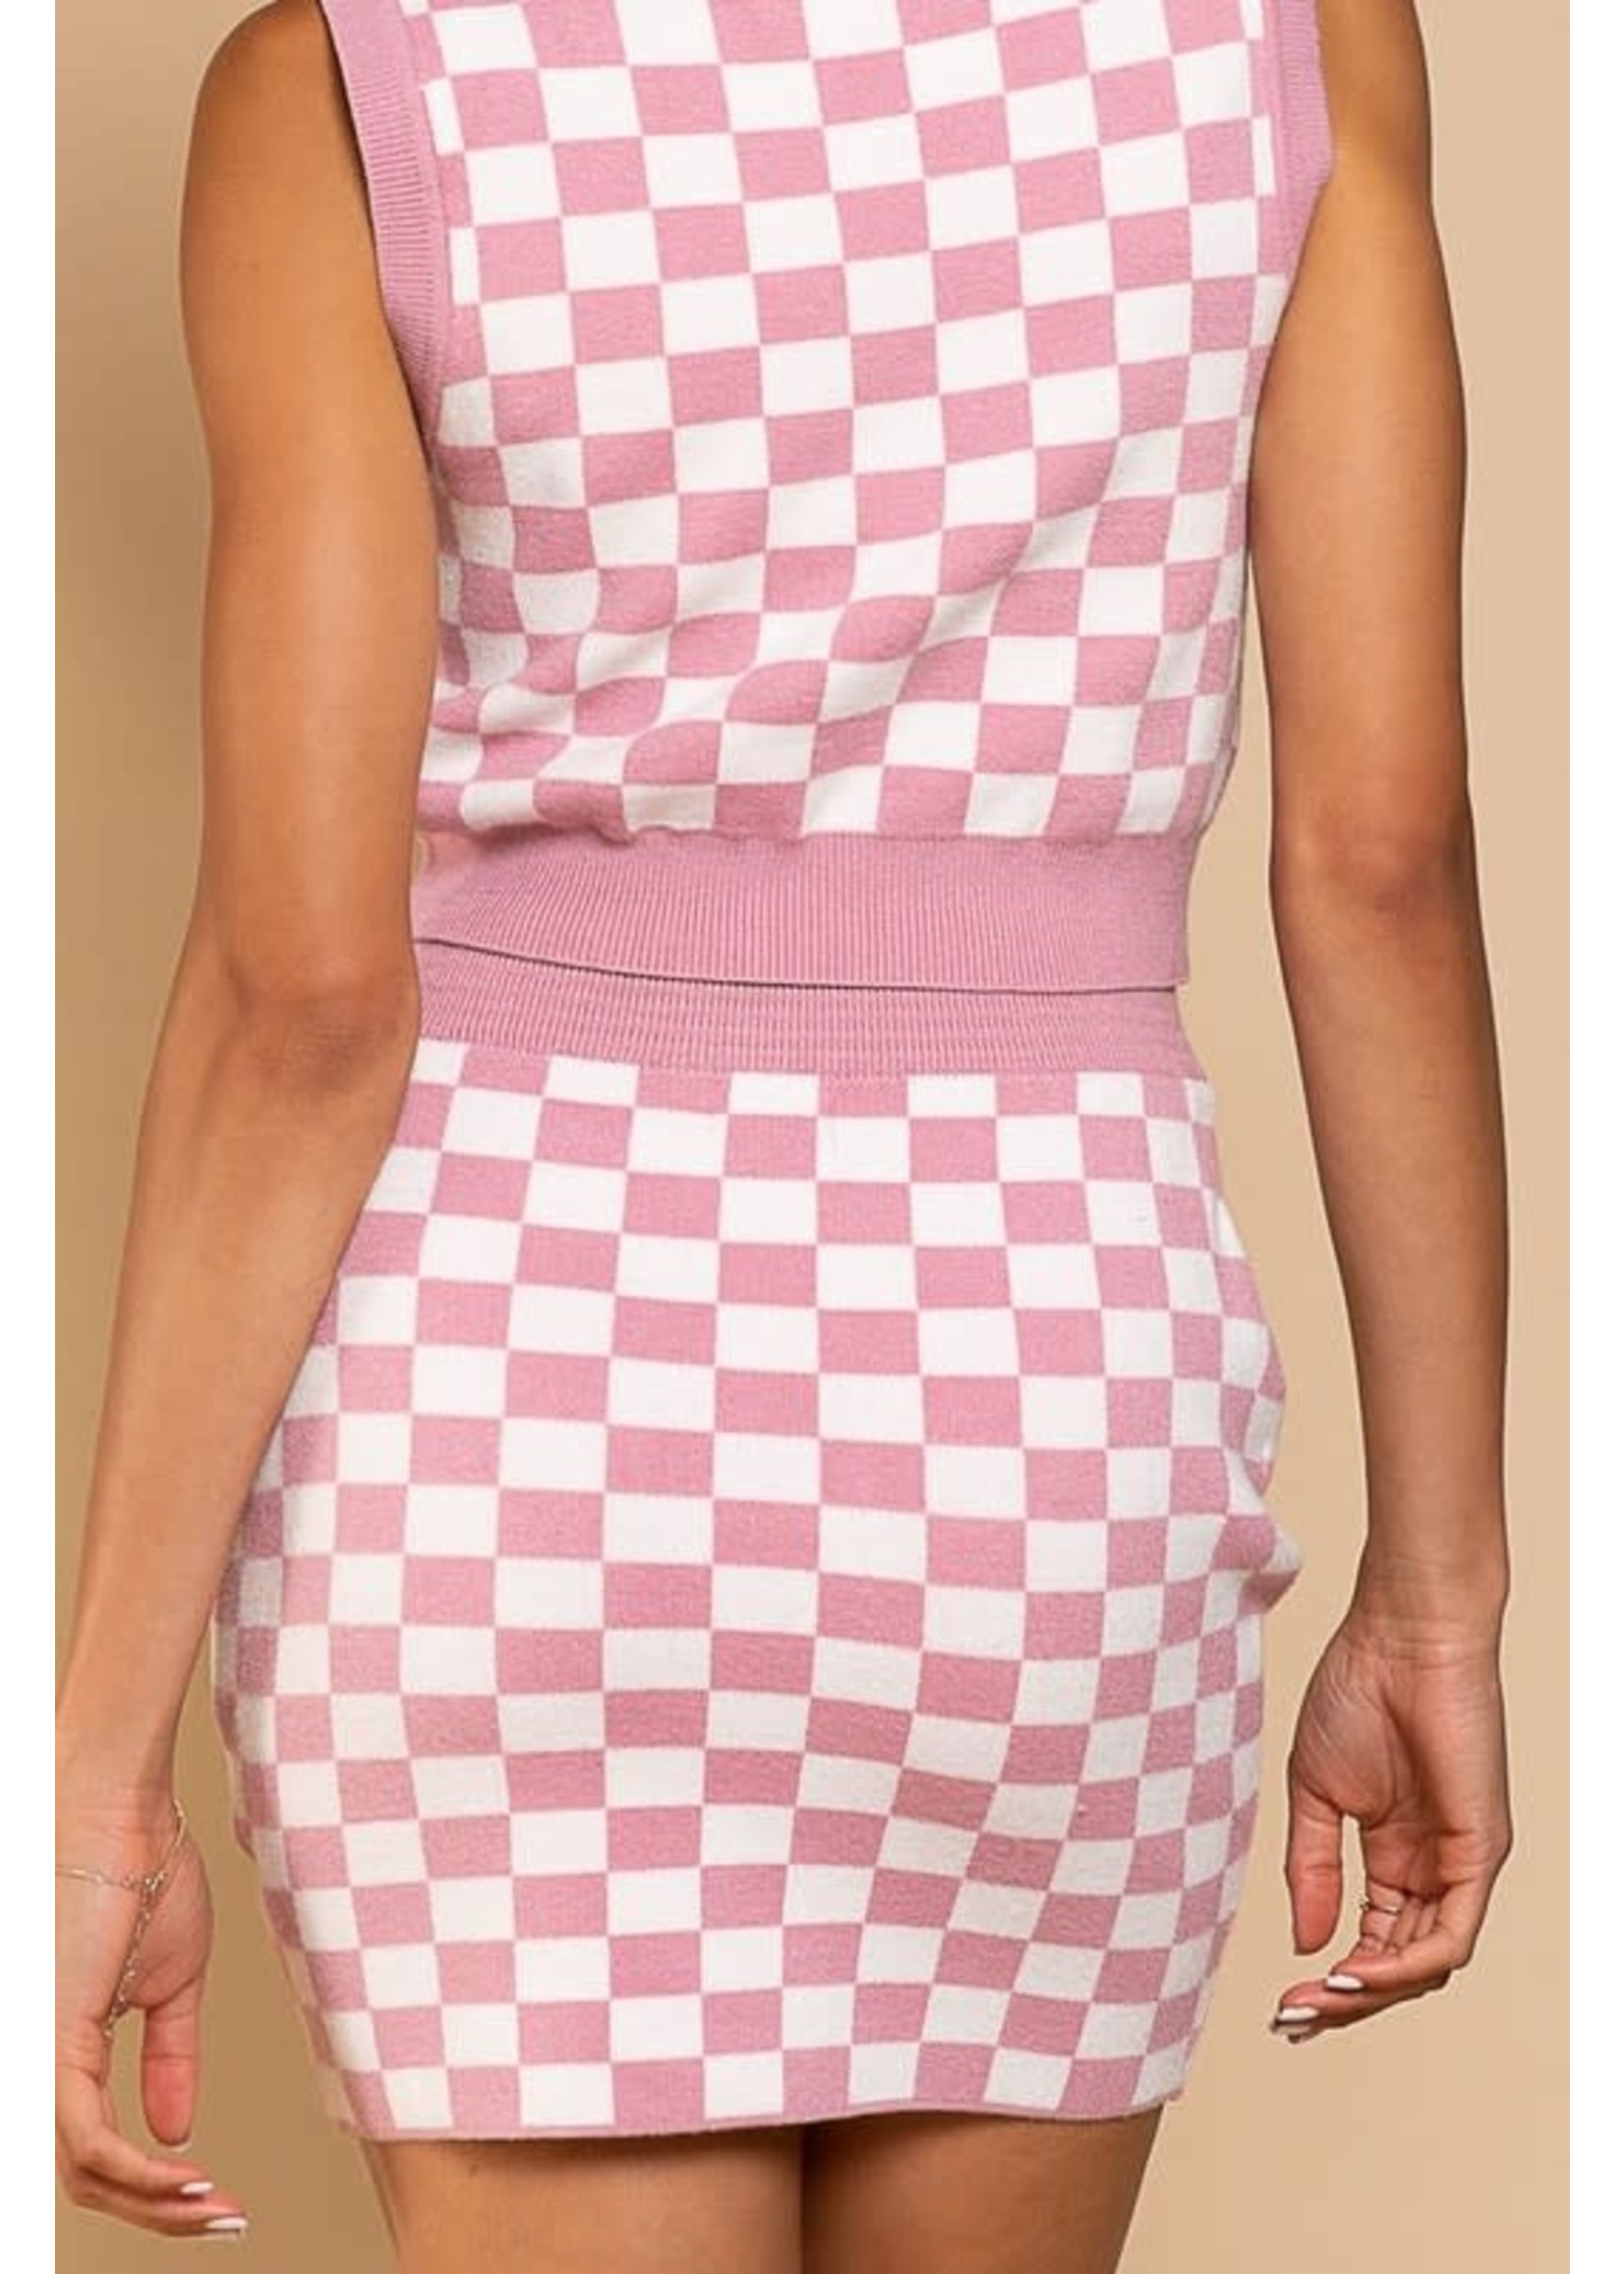 EM & ELLE Cleo Checkered Skirt